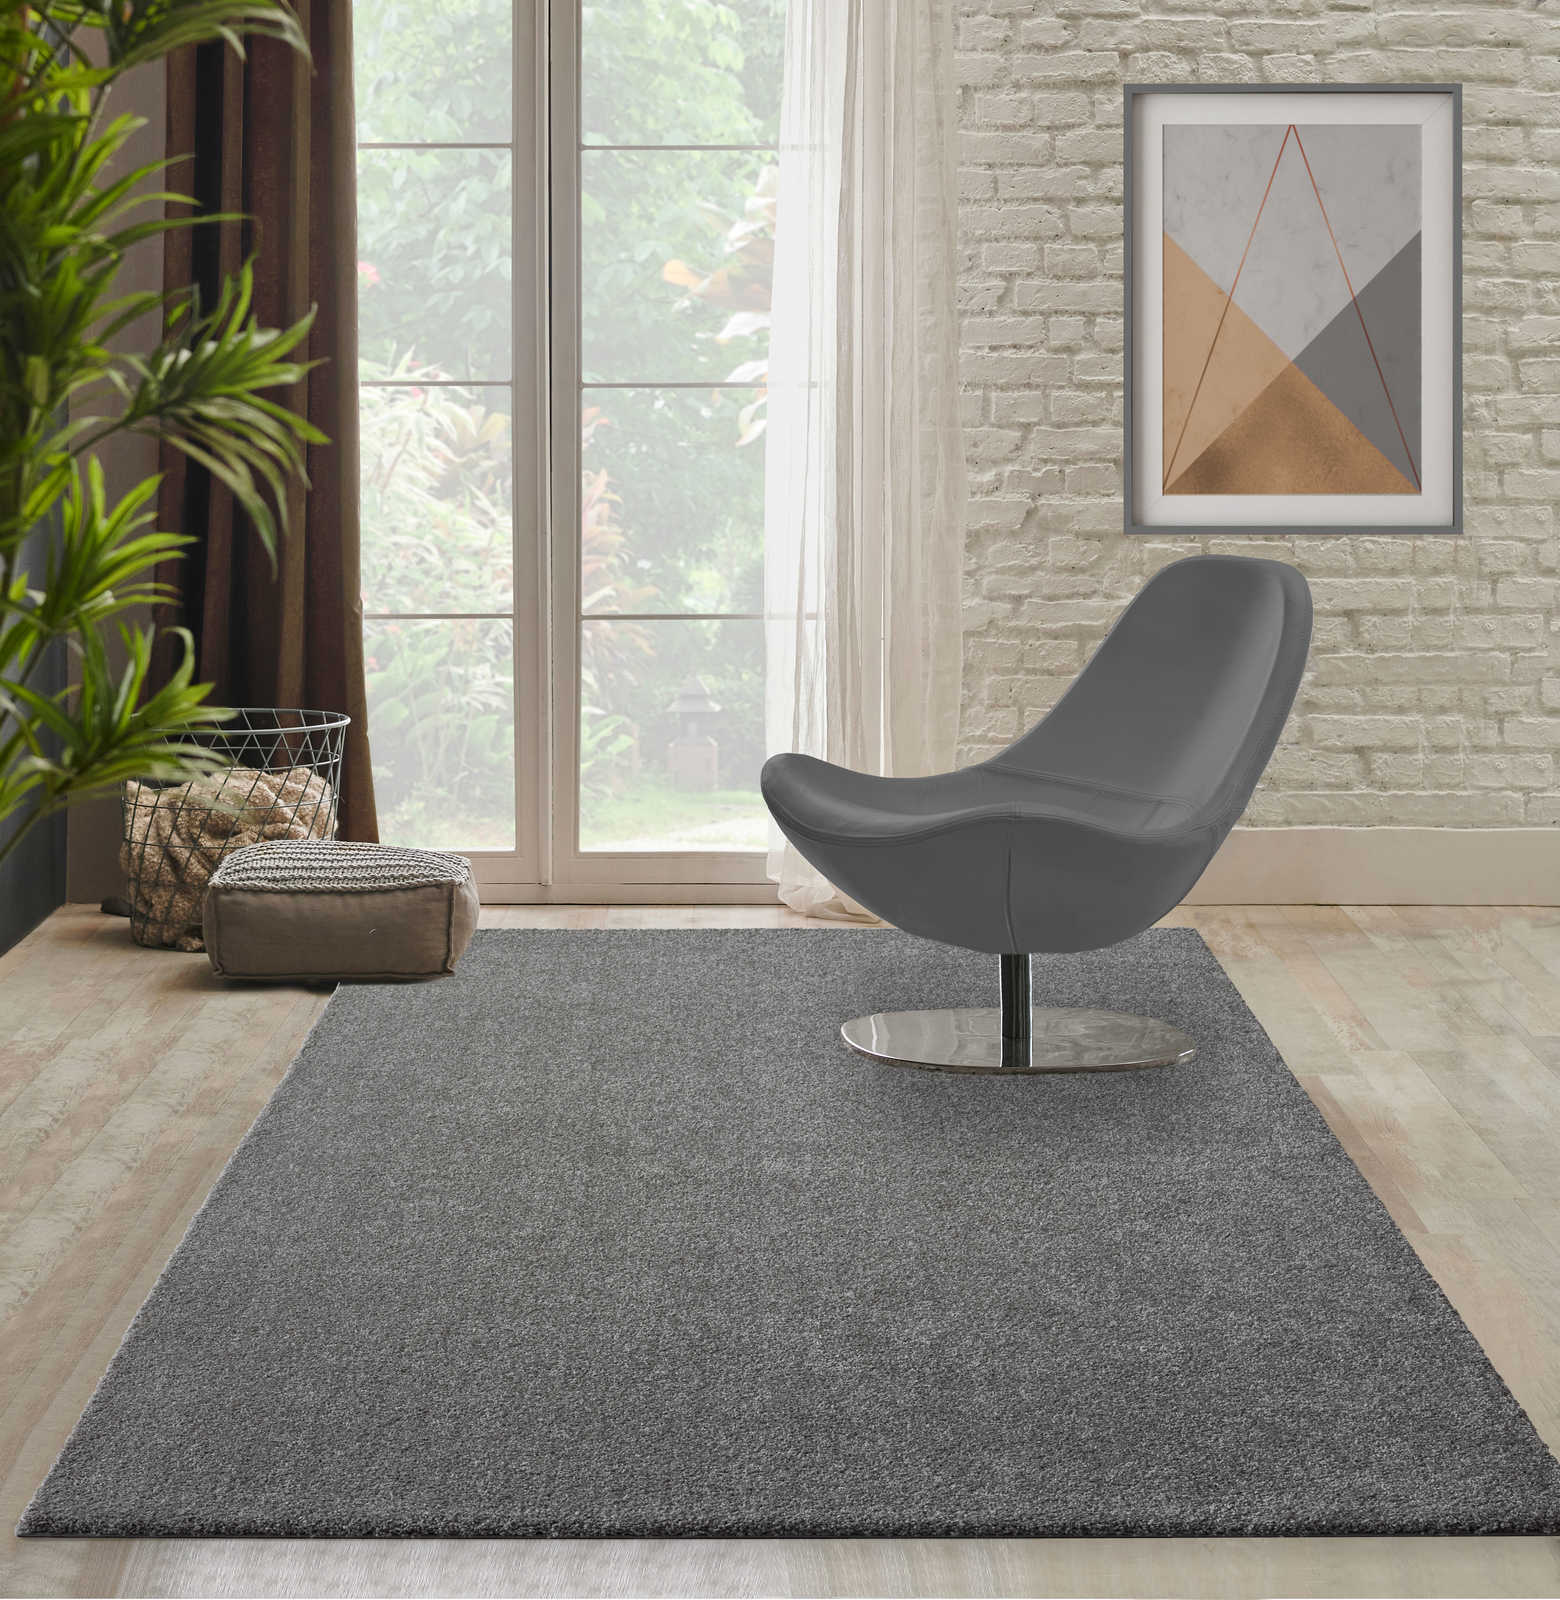 Flauschiger Kurzflor Teppich in Grau – 110 x 60 cm
